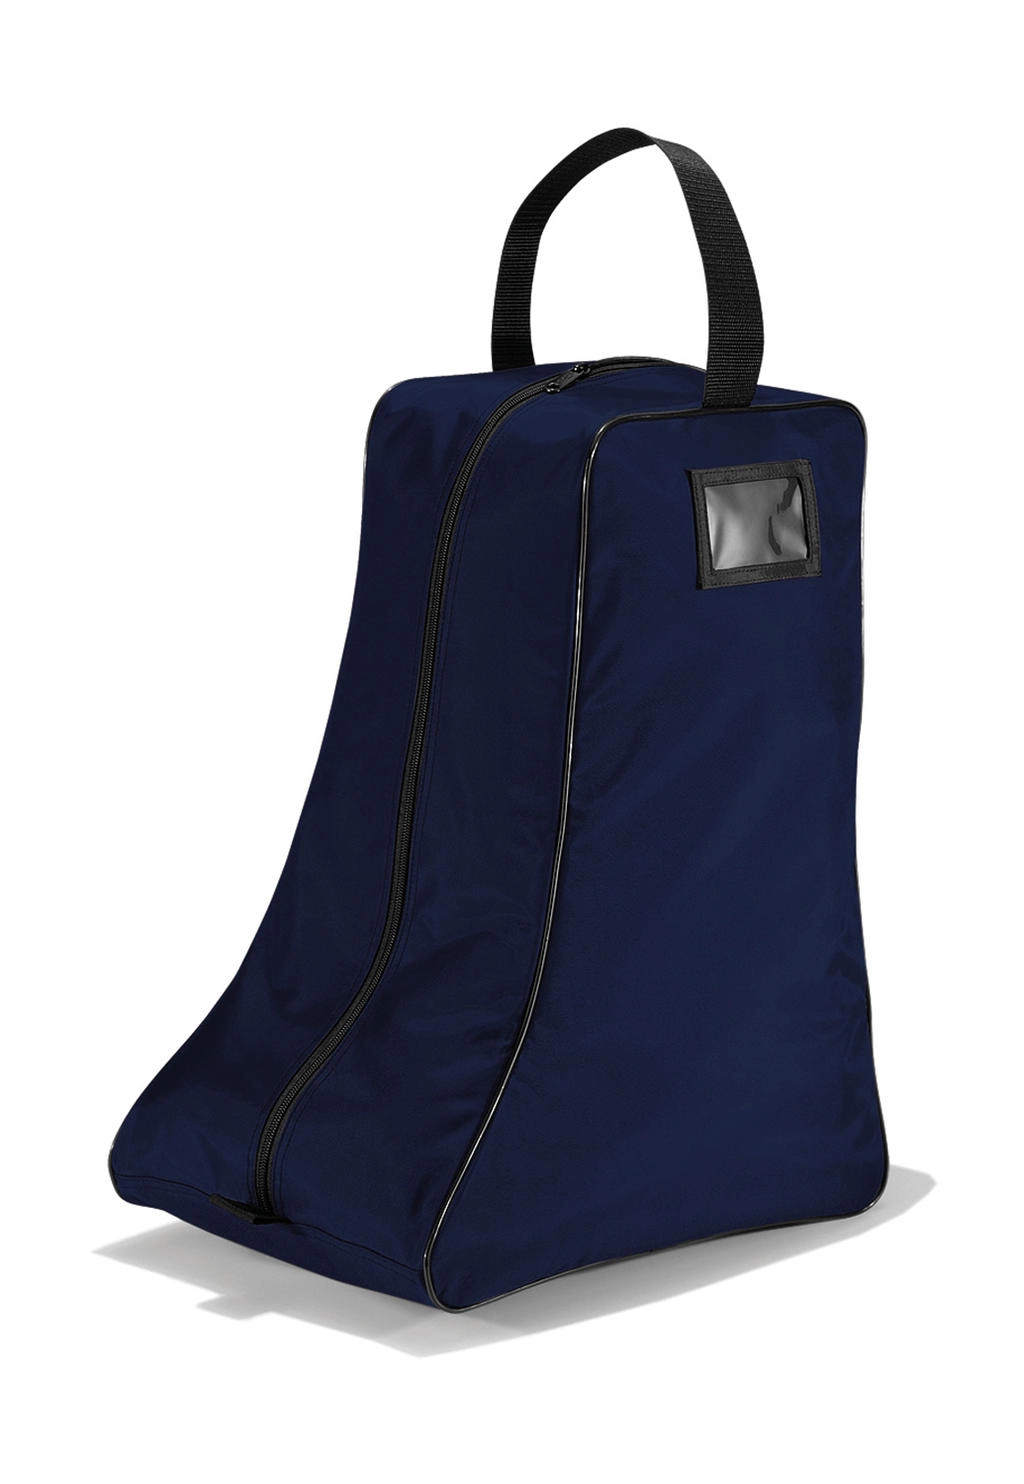 Boots Bag zum Besticken und Bedrucken in der Farbe Navy/Black mit Ihren Logo, Schriftzug oder Motiv.